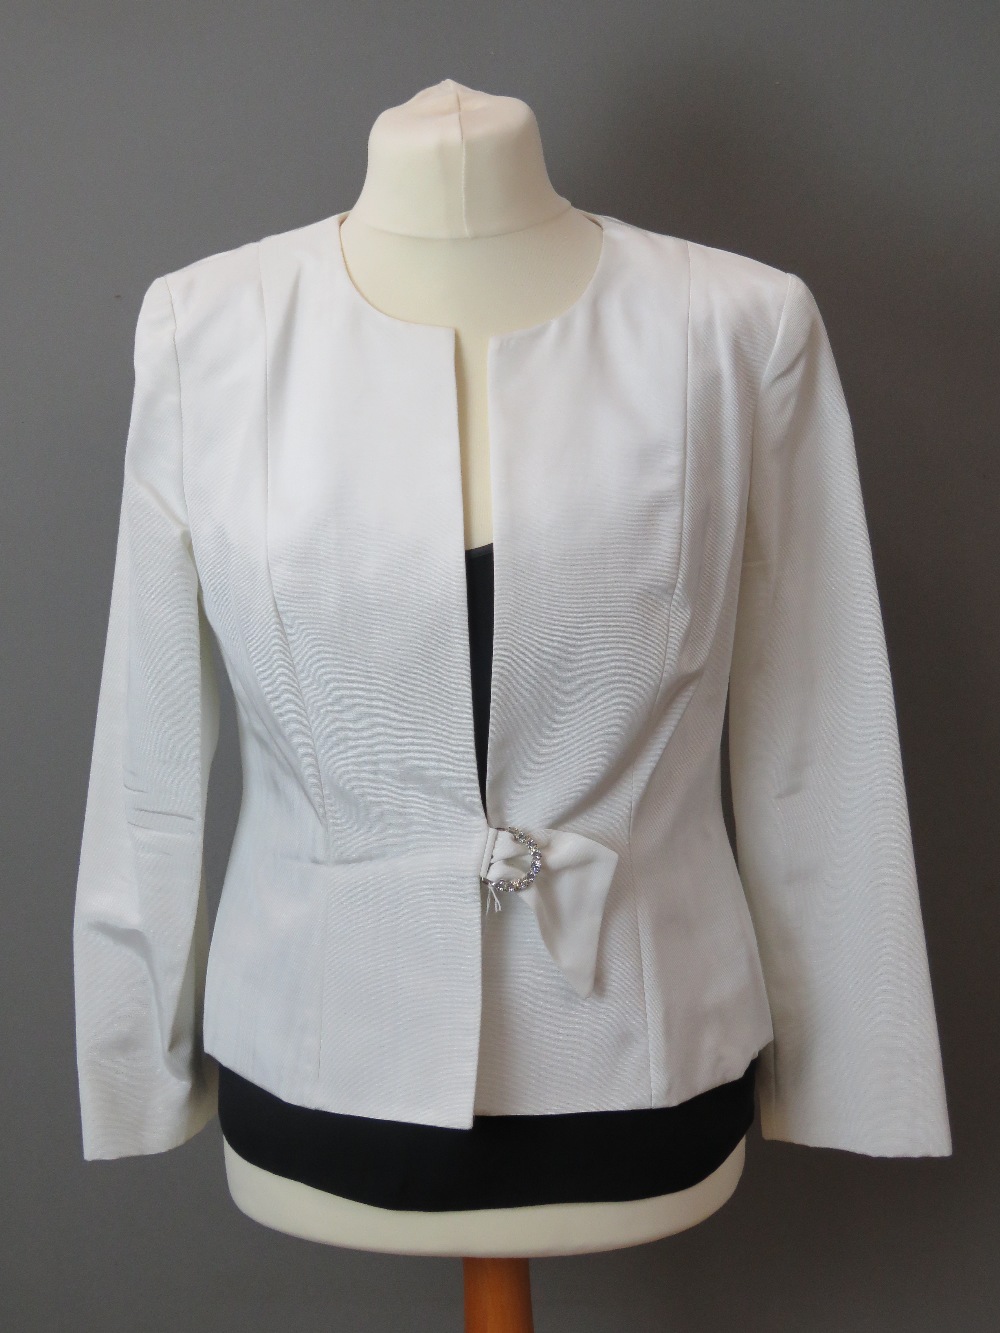 Frank Usher; 50% cotton ladies white jacket, UK size 14.